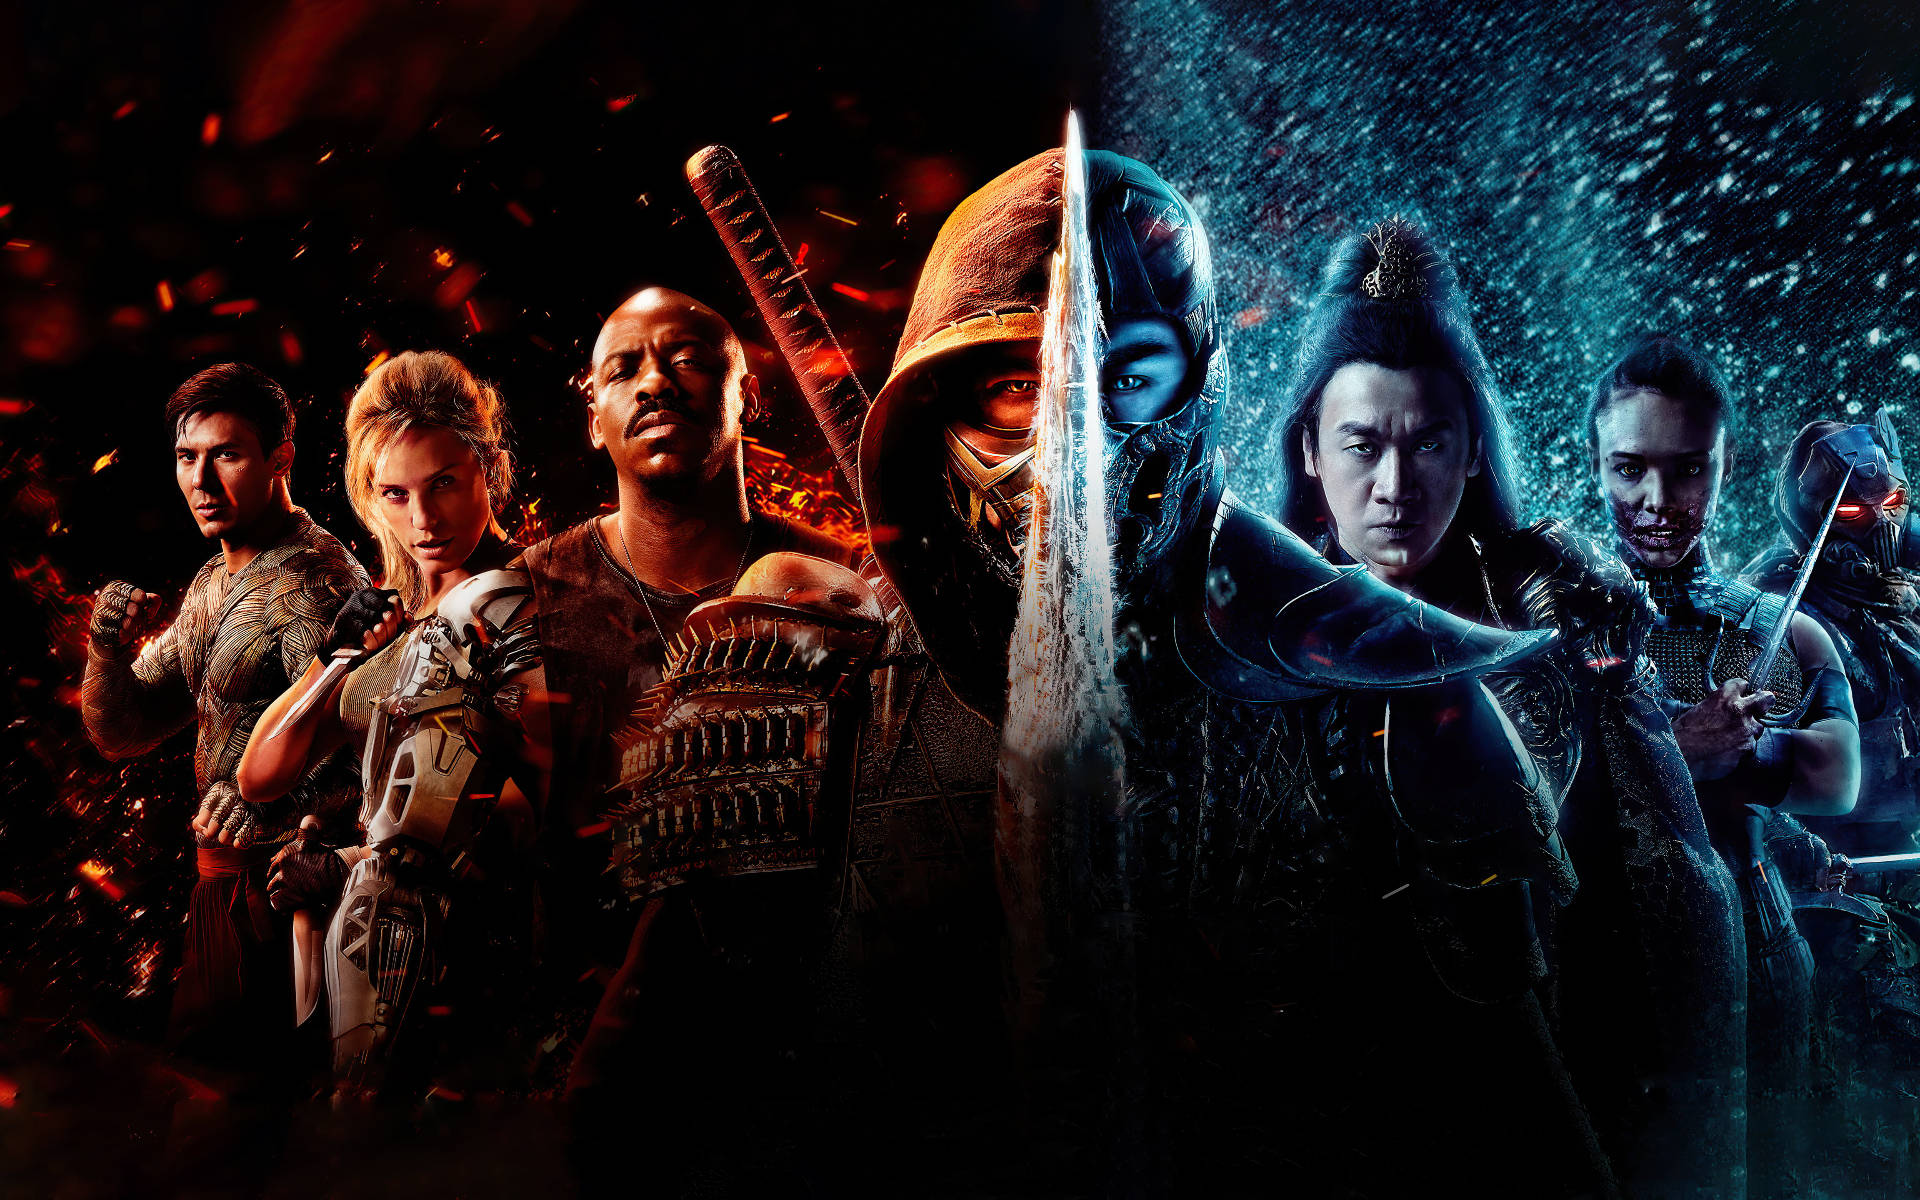 Mortal Kombat Scorpion Vs Sub Zero Teams Wallpaper